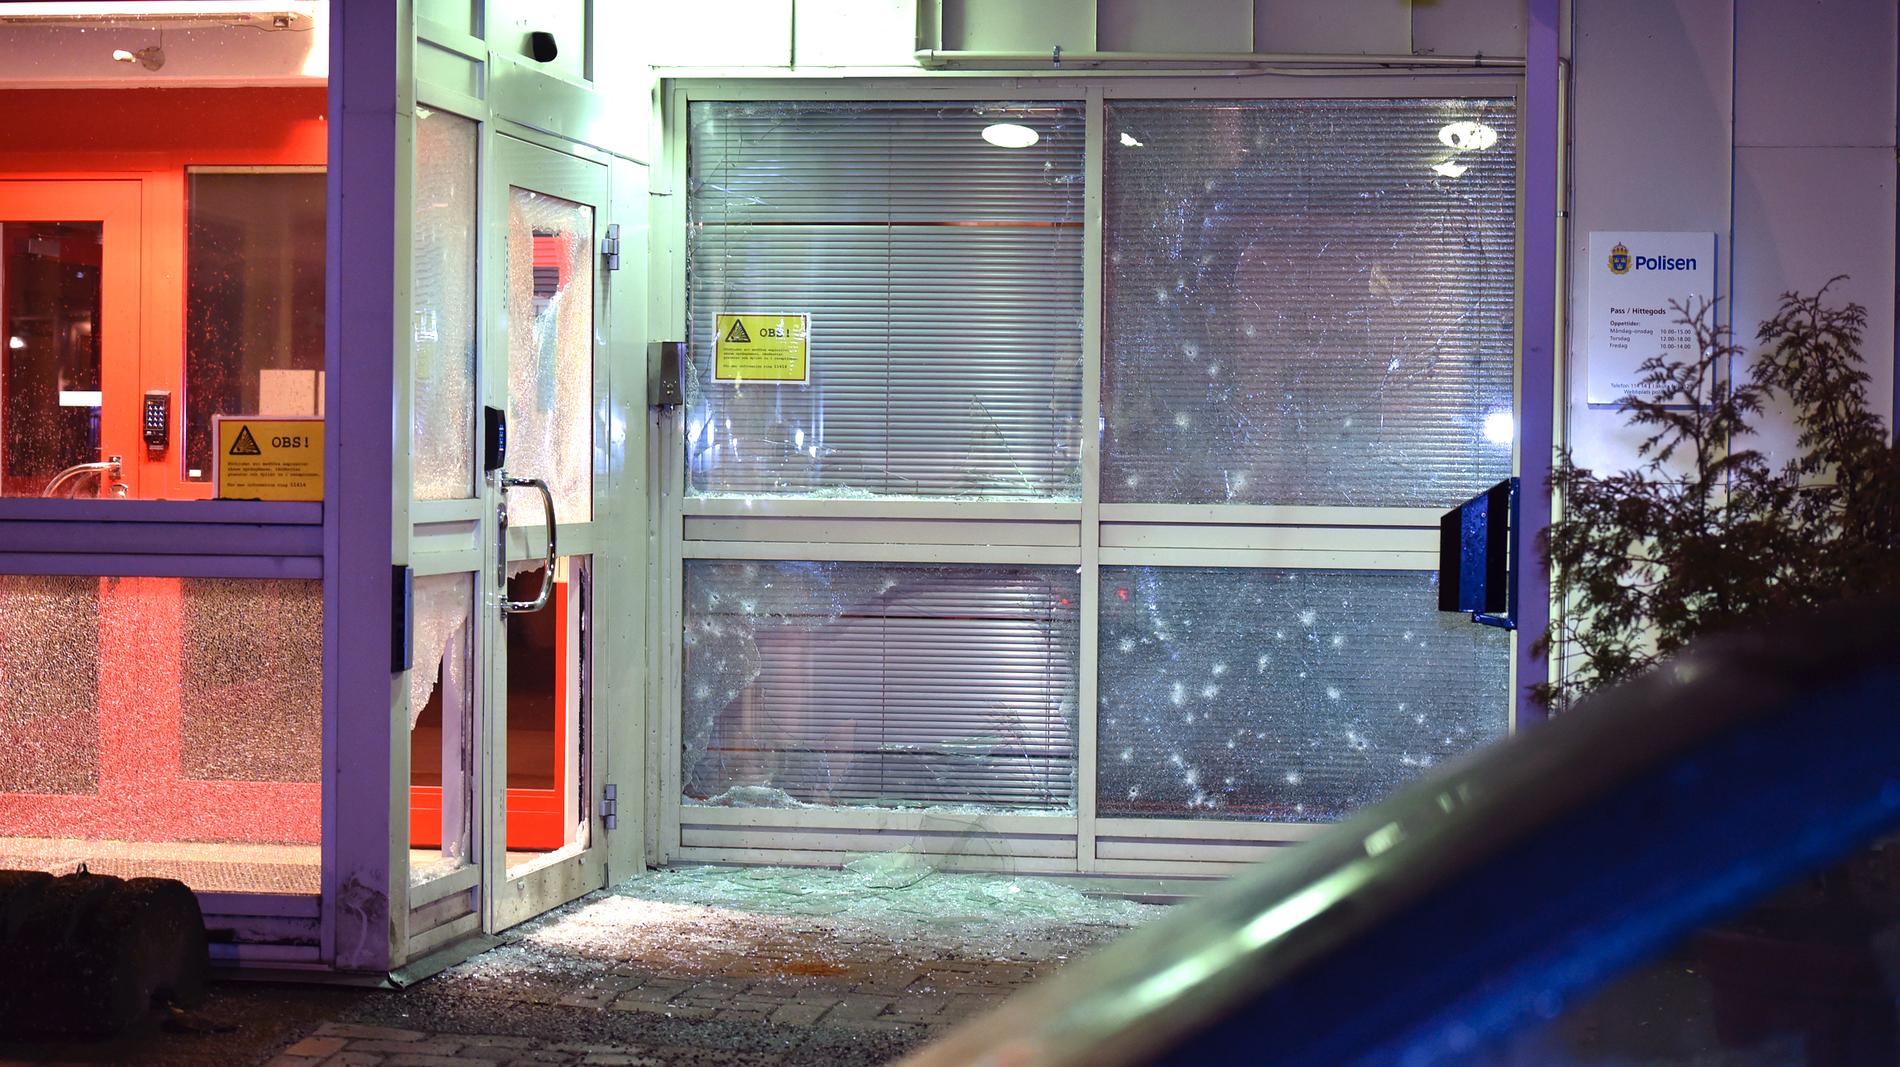 En handgranat kastades mot polishuset i Katrineholm på tolvslaget under nyårsnatten mot 2017